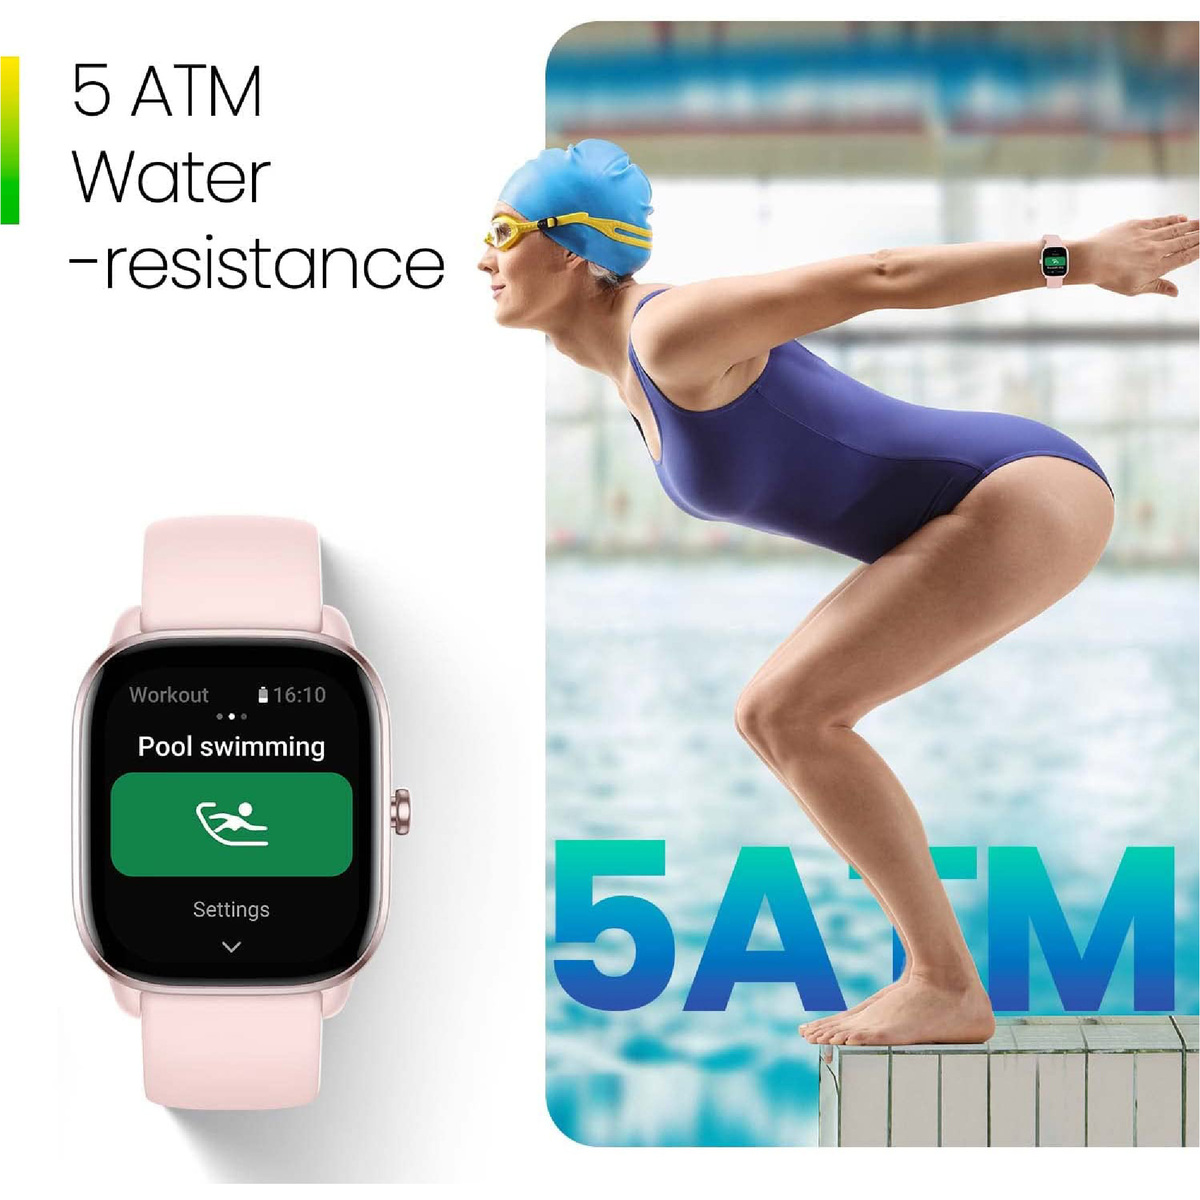 أمازفيت جي تي اس 4 ميني ساعة ذكية للنساء والرجال، أليكسا مدمج، ، GPS ، جهاز تتبع اللياقة البدنية مع 120+ وضع رياضي، بطارية تدوم 15 يومًا، مراقب الأكسجين في الدم معدل ضربات القلب، متوافق هاتف أندرويد مع آيفون - وردي